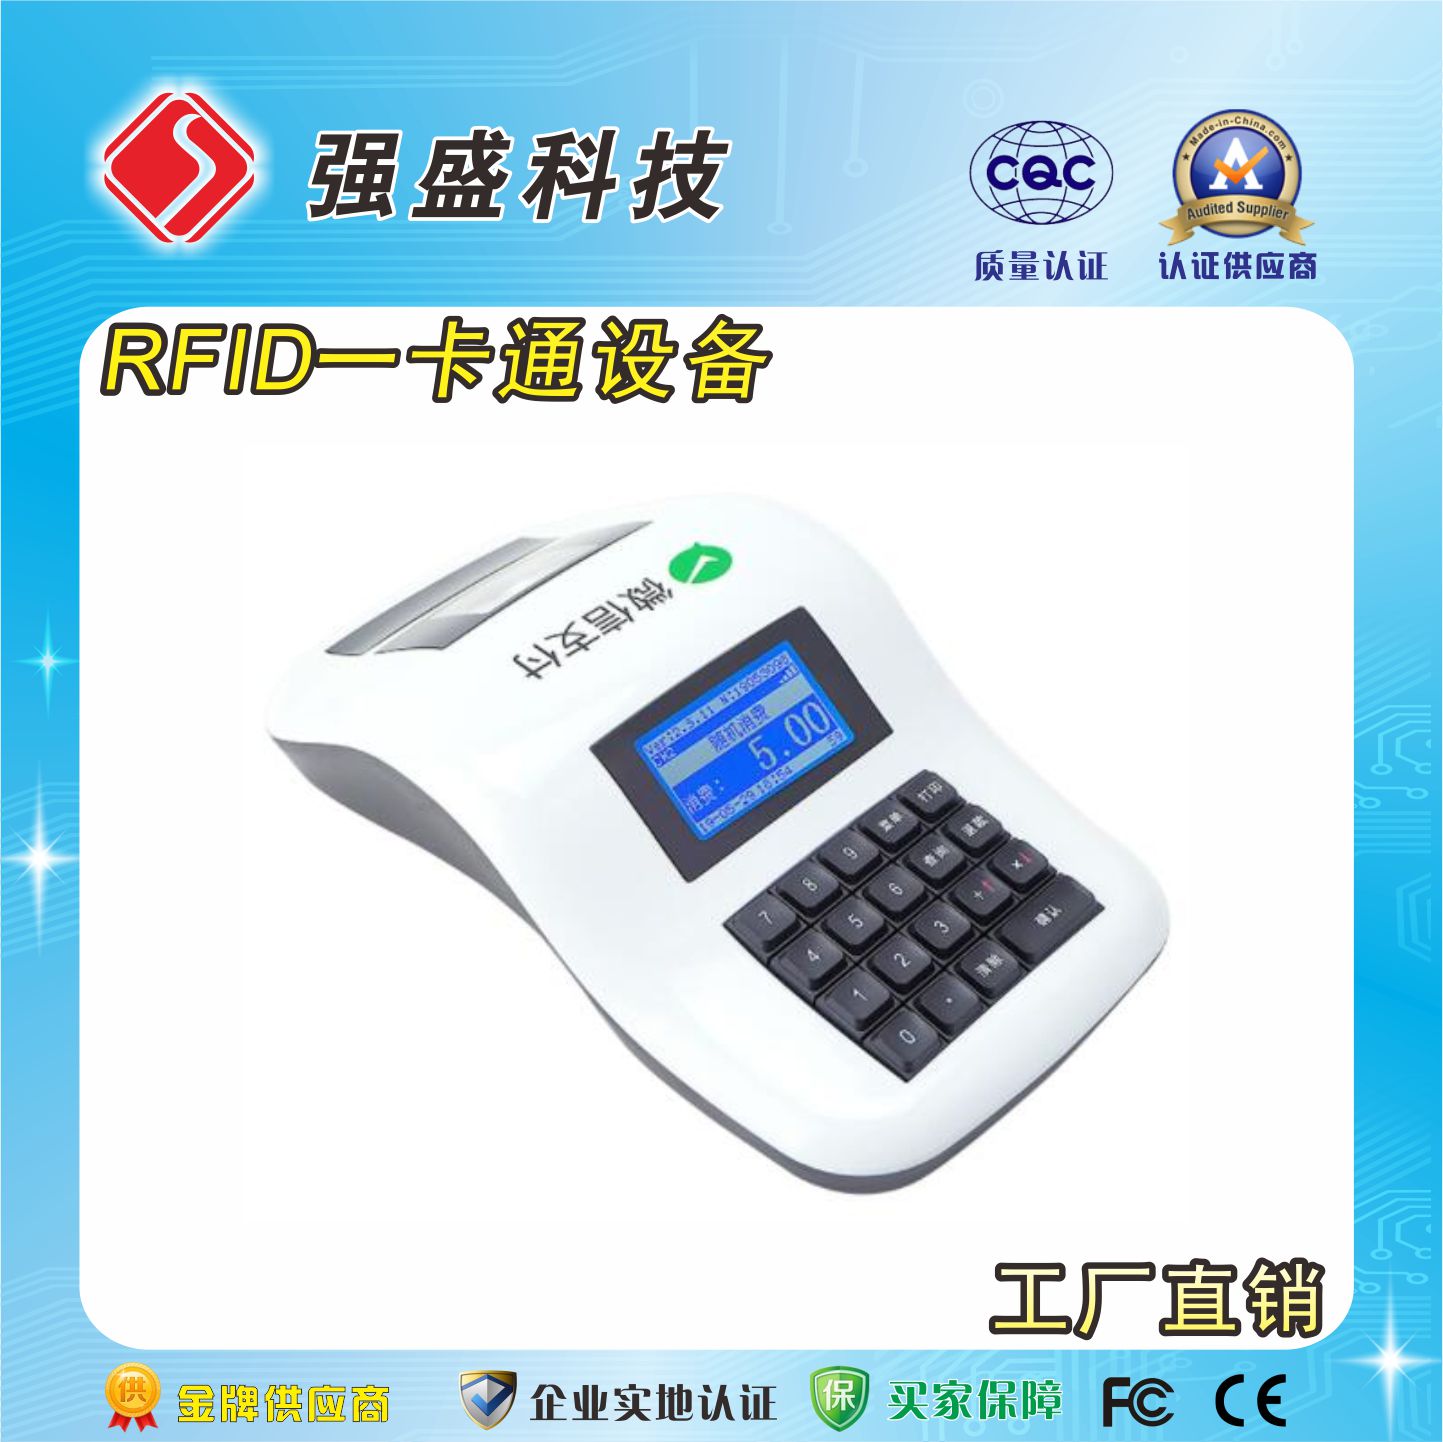 台式消费机 QS-OFS6 IC卡云消费机 批量供应校园饭堂刷卡机2